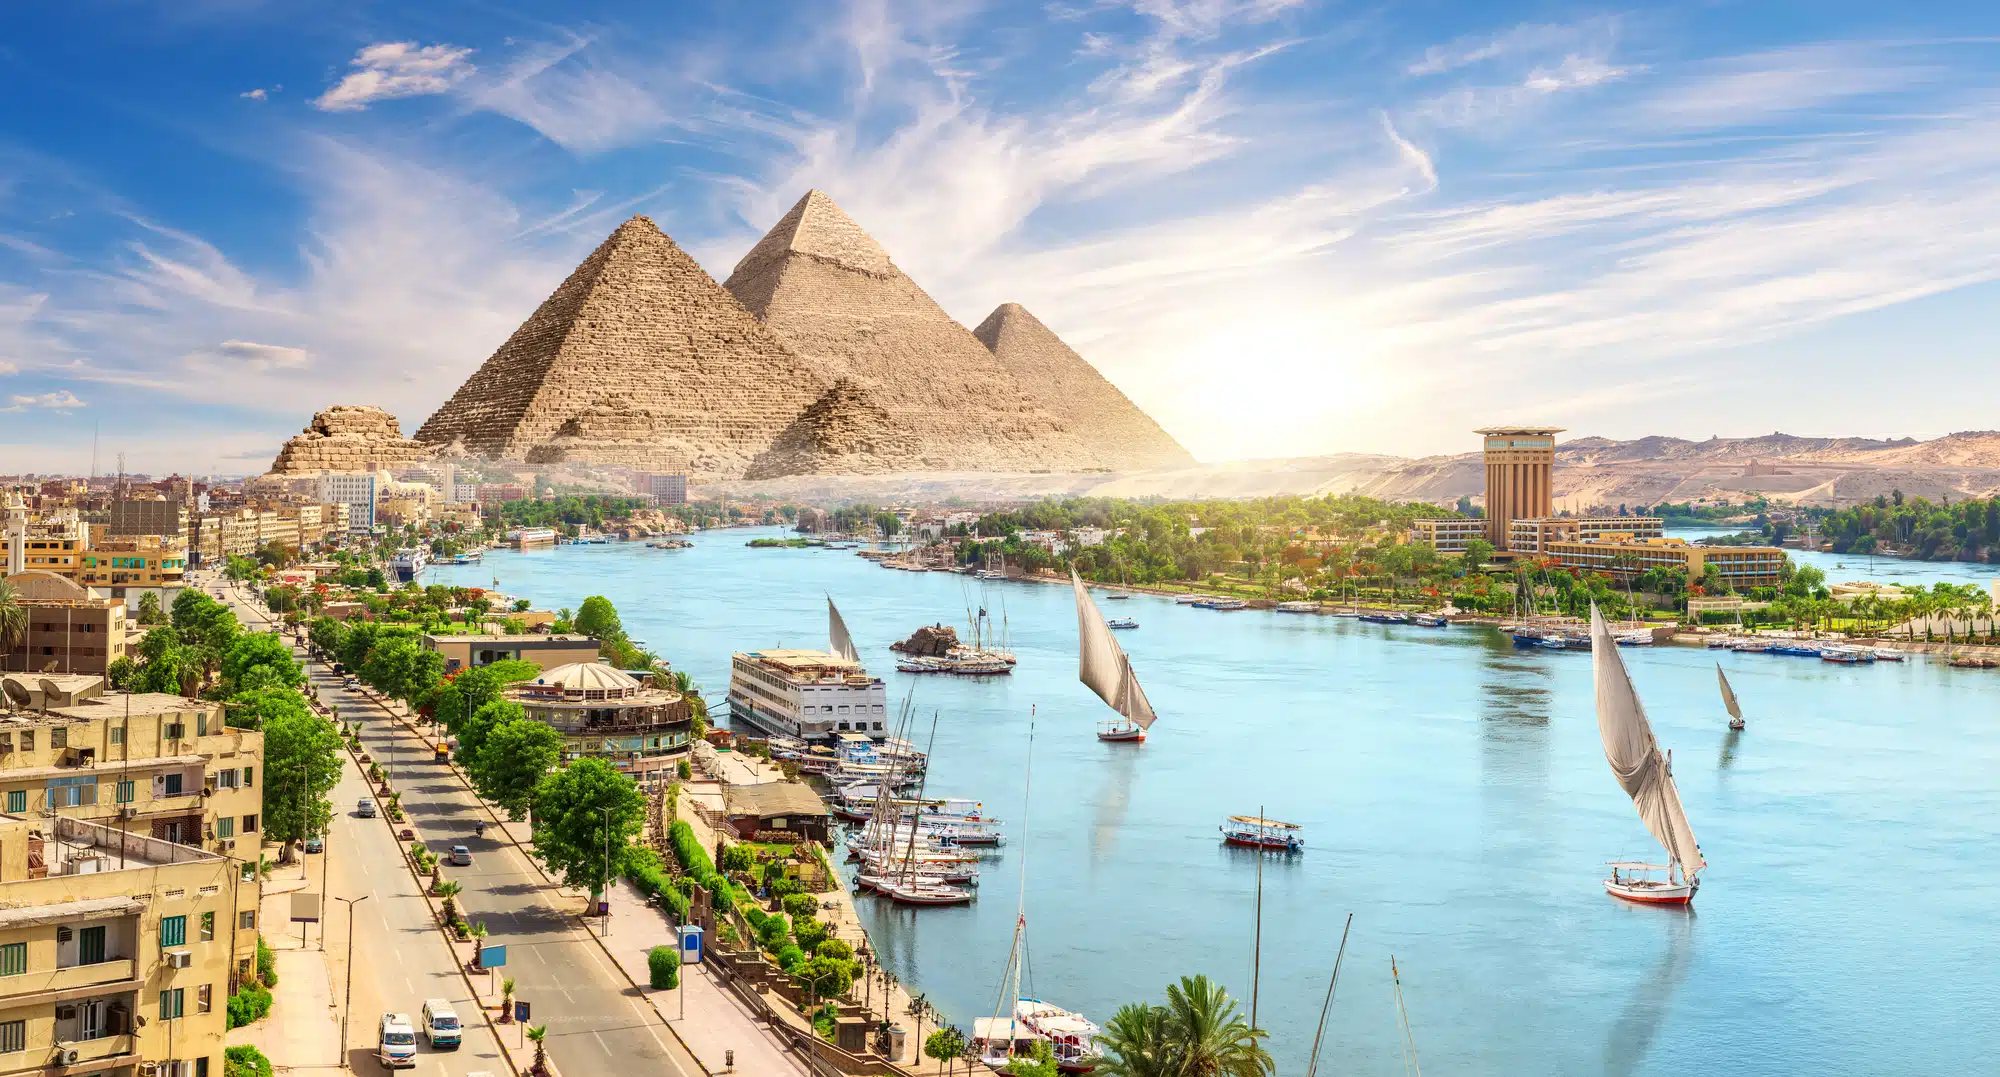 הנילוס והפירמידות של אסואן ברקע. <a href="https://depositphotos.com. ">המחשה: depositphotos.com</a>